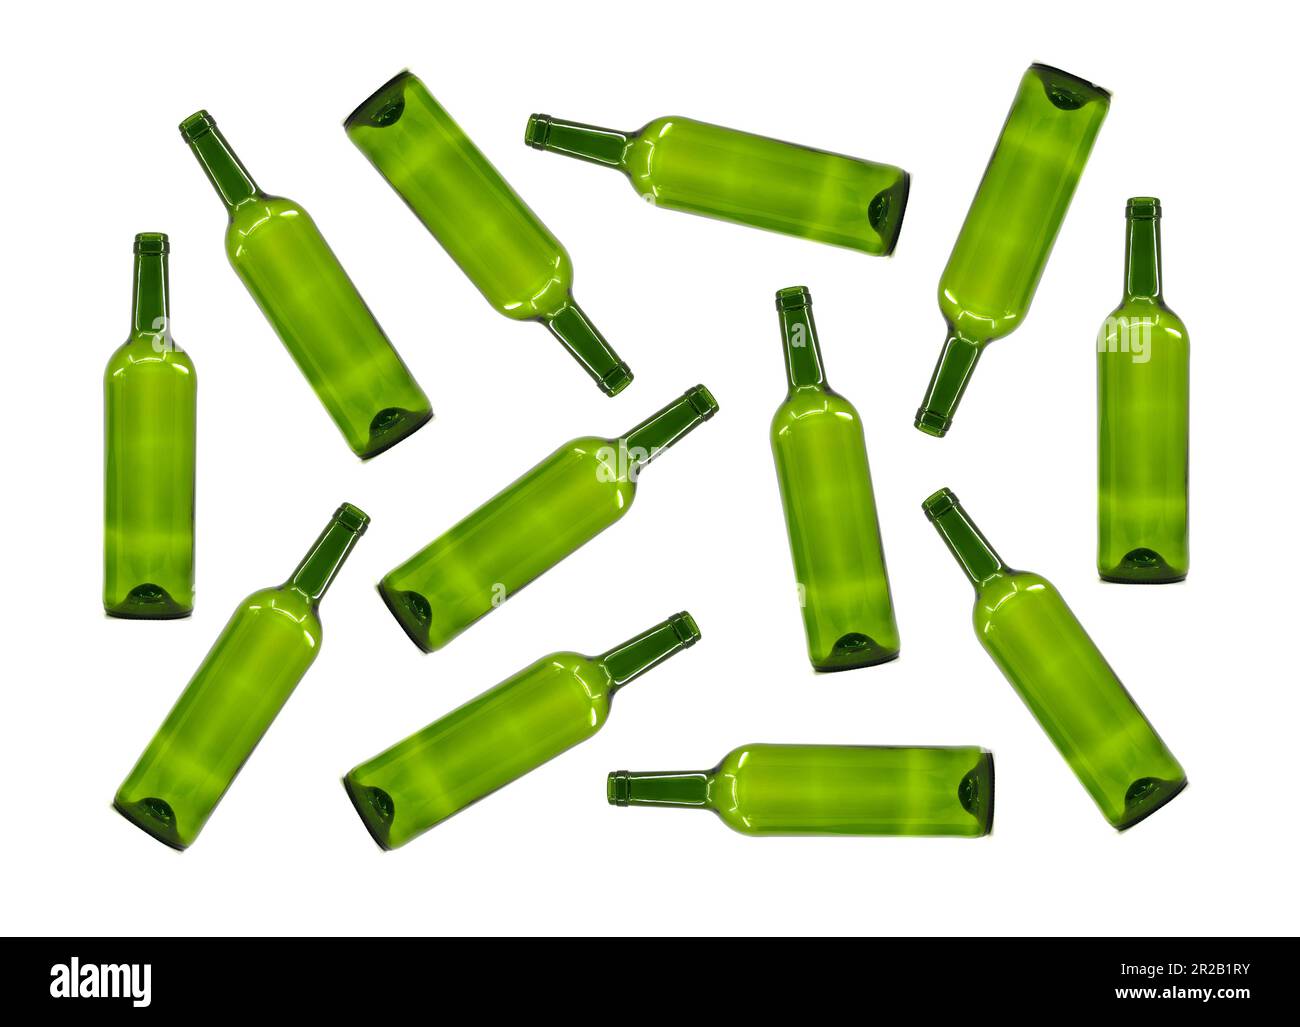 Zufallsmuster leerer Grünglasflaschen, isoliert auf weißem Hintergrund. Alkoholkonsum-Konzept. Keine Menschen. Stockfoto